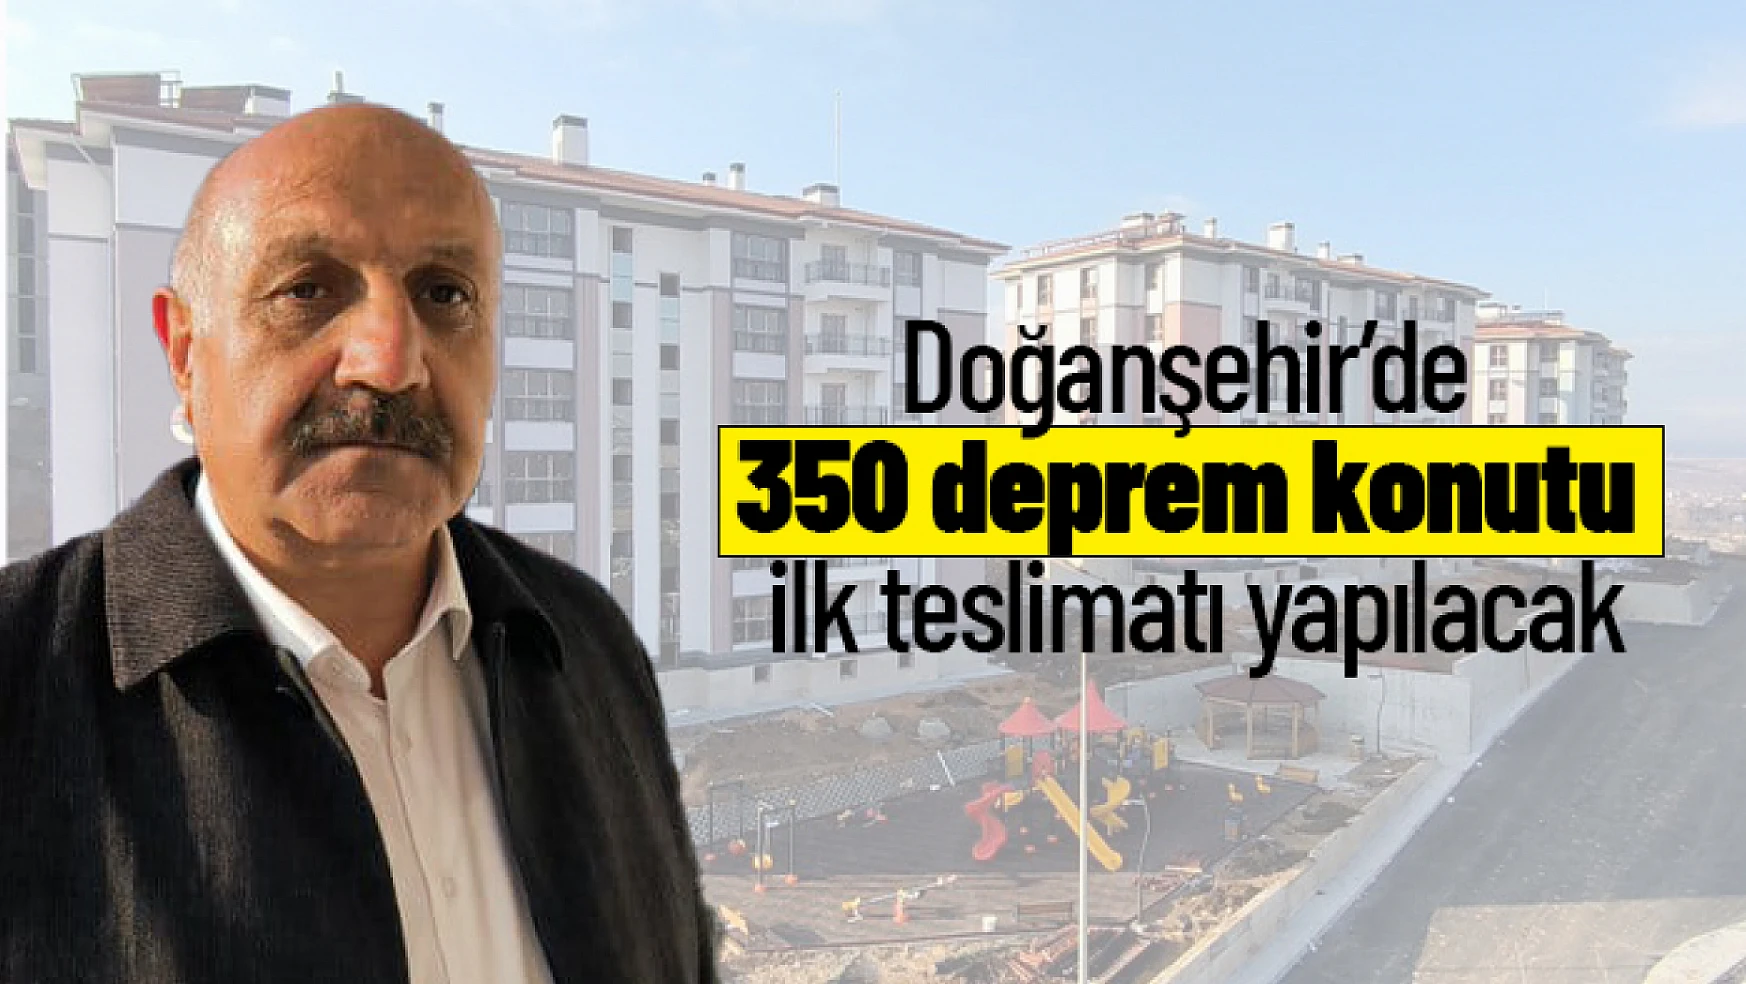 Doğanşehir'de 350 deprem konutu ilk teslimatı yapılacak...